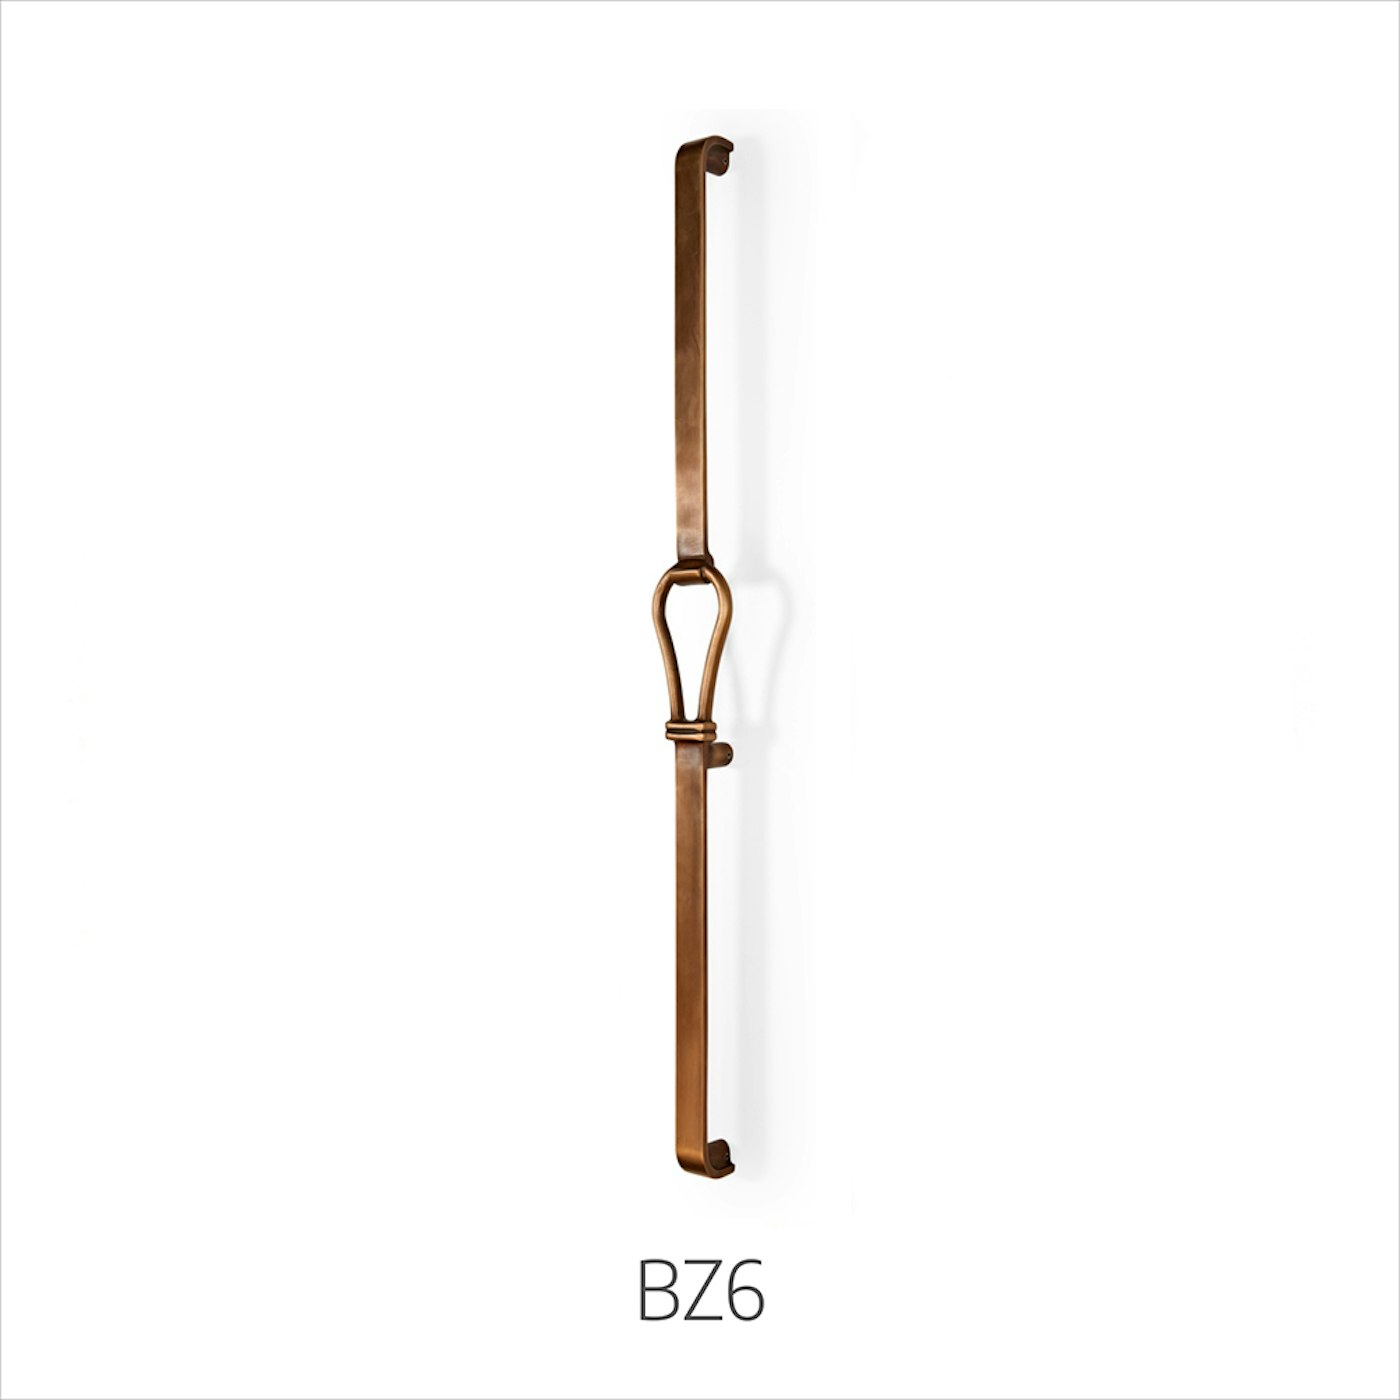 bronze handles bz6